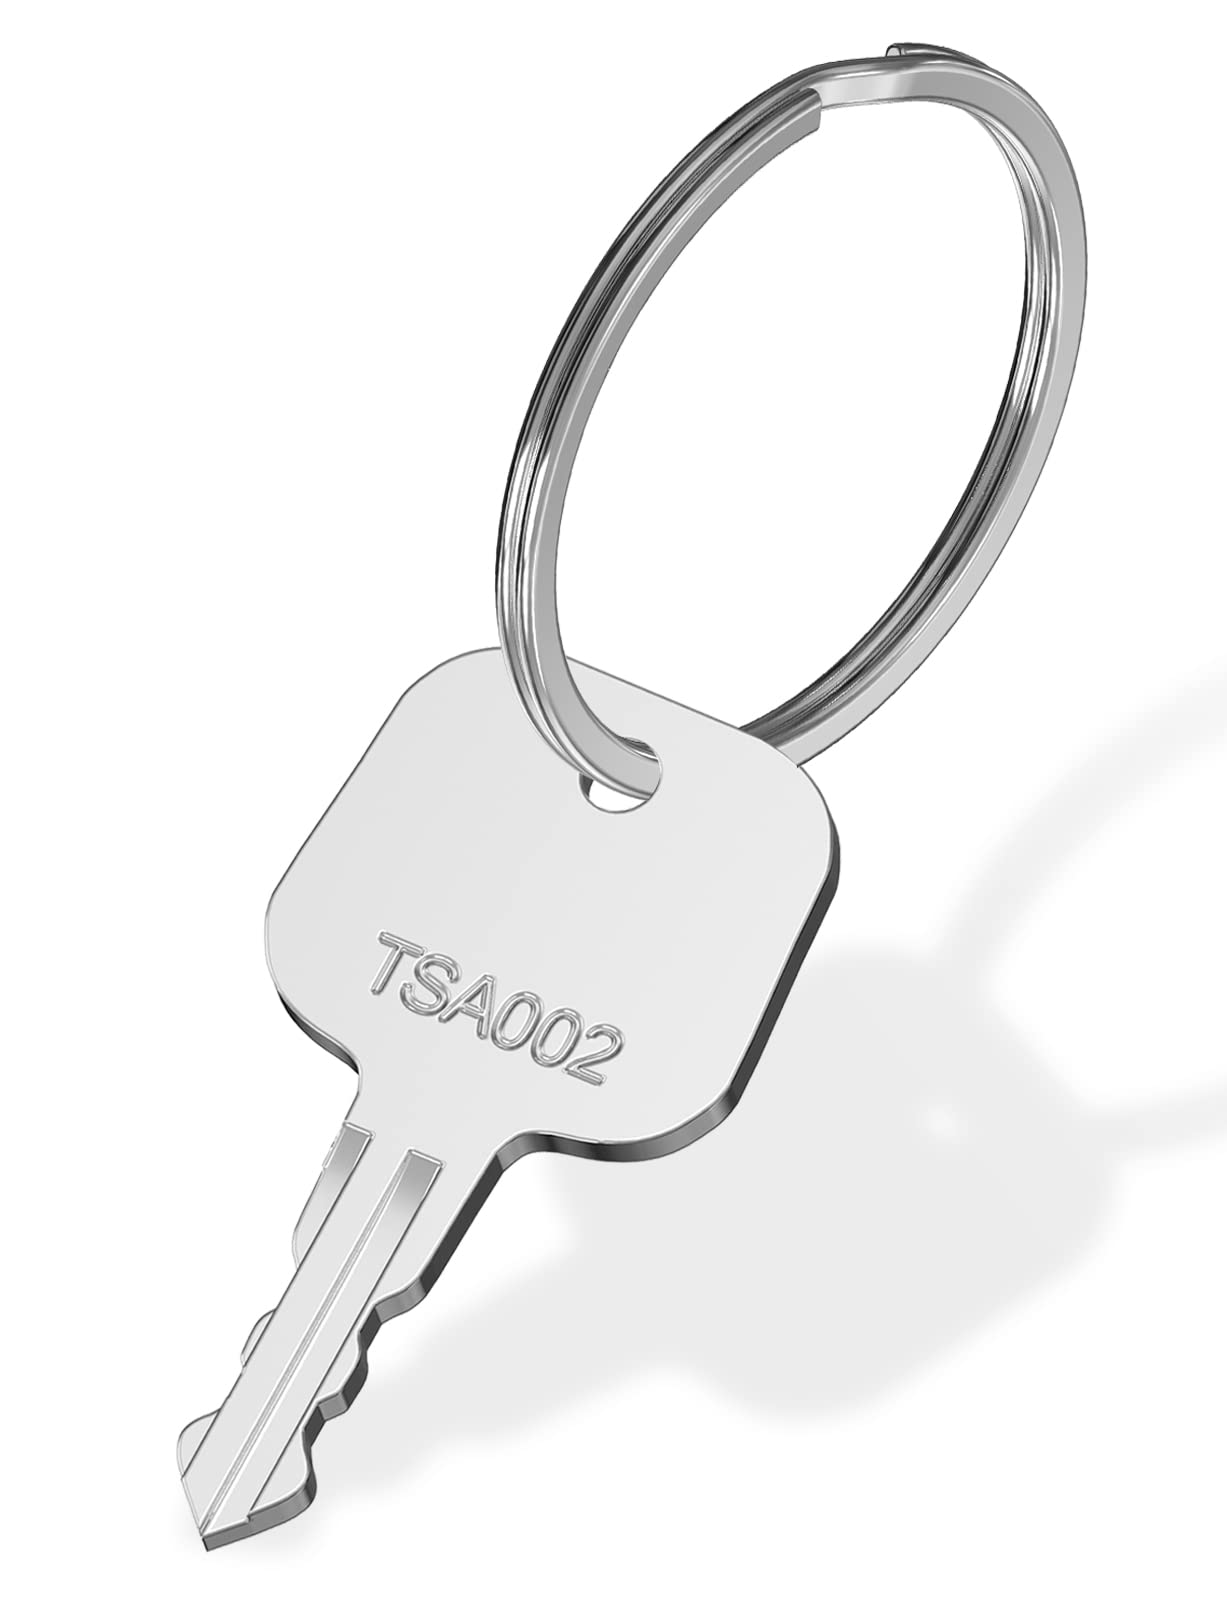 商品情報商品の説明荷物のロックのモデルをご確認ください。TSA002タイプであれば、このキーで開けることができます。 このキーは精密研磨されており、ラゲッジTSA002タイプのロックに完璧に適合しています。 携帯に便利なキーリング付きです。 パッケージ内容：1個のTSA002キー、付属のキーリング 表面は研磨処理を施し、エッジは滑らかで手を切らない、ロック穴を正確に開ける。主な仕様 荷物のロックのモデルをご確認ください。TSA002タイプであれば、このキーで開けることができます。brこのキーは精密研磨されており、ラゲッジTSA002タイプのロックに完璧に適合しています。br携帯に便利なキーリング付きです。brパッケージ内容：1個のTSA002キー、付属のキーリングbr表面は研磨処理を施し、エッジは滑らかで手を切らない、ロック穴を正確に開ける。